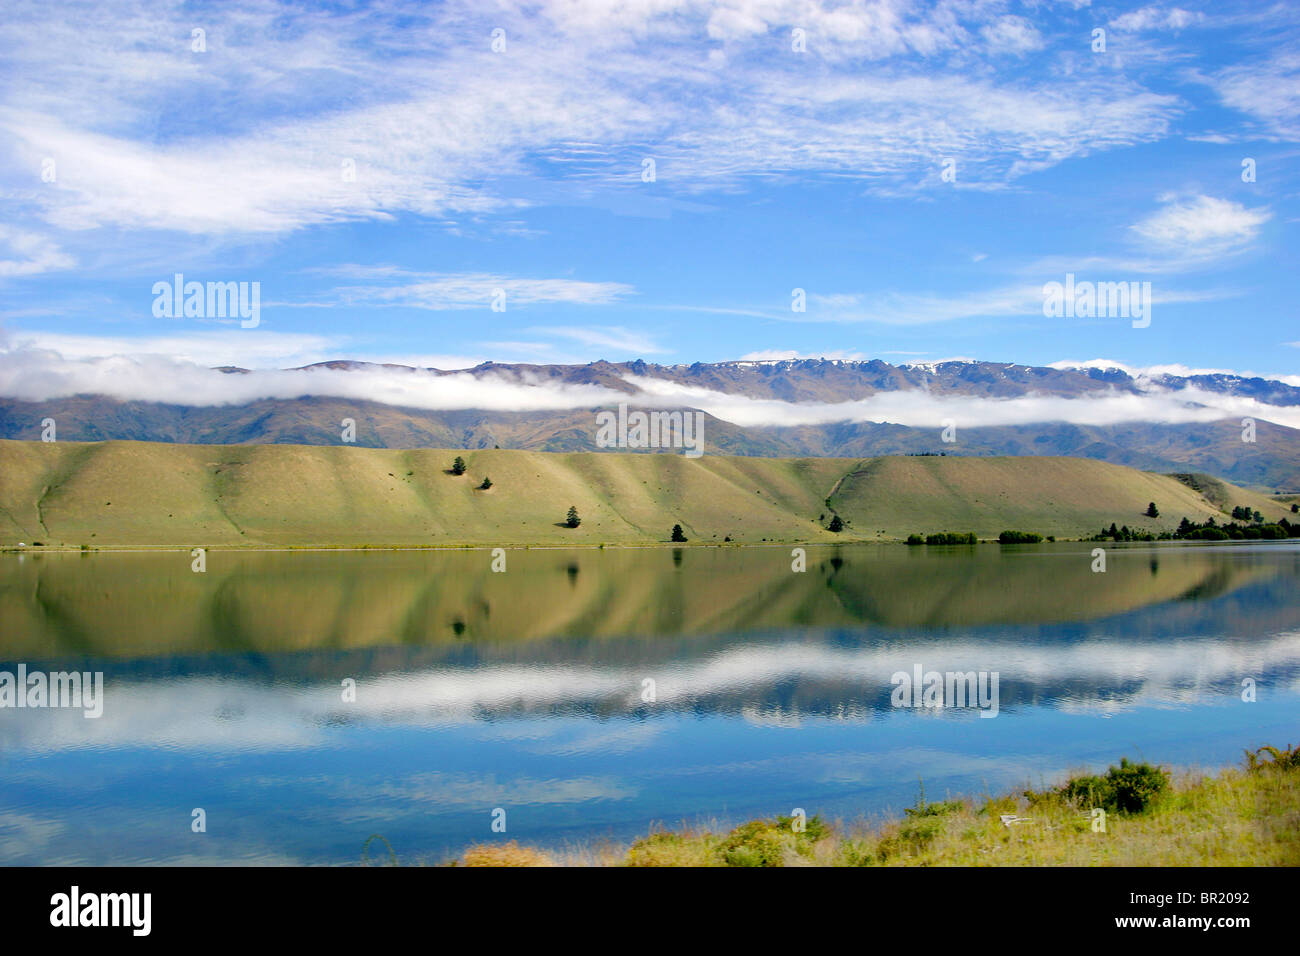 Cromwell, Lake Dunstan, New Zealand. Amazing reflections on man made Lake Dunstan. Stock Photo